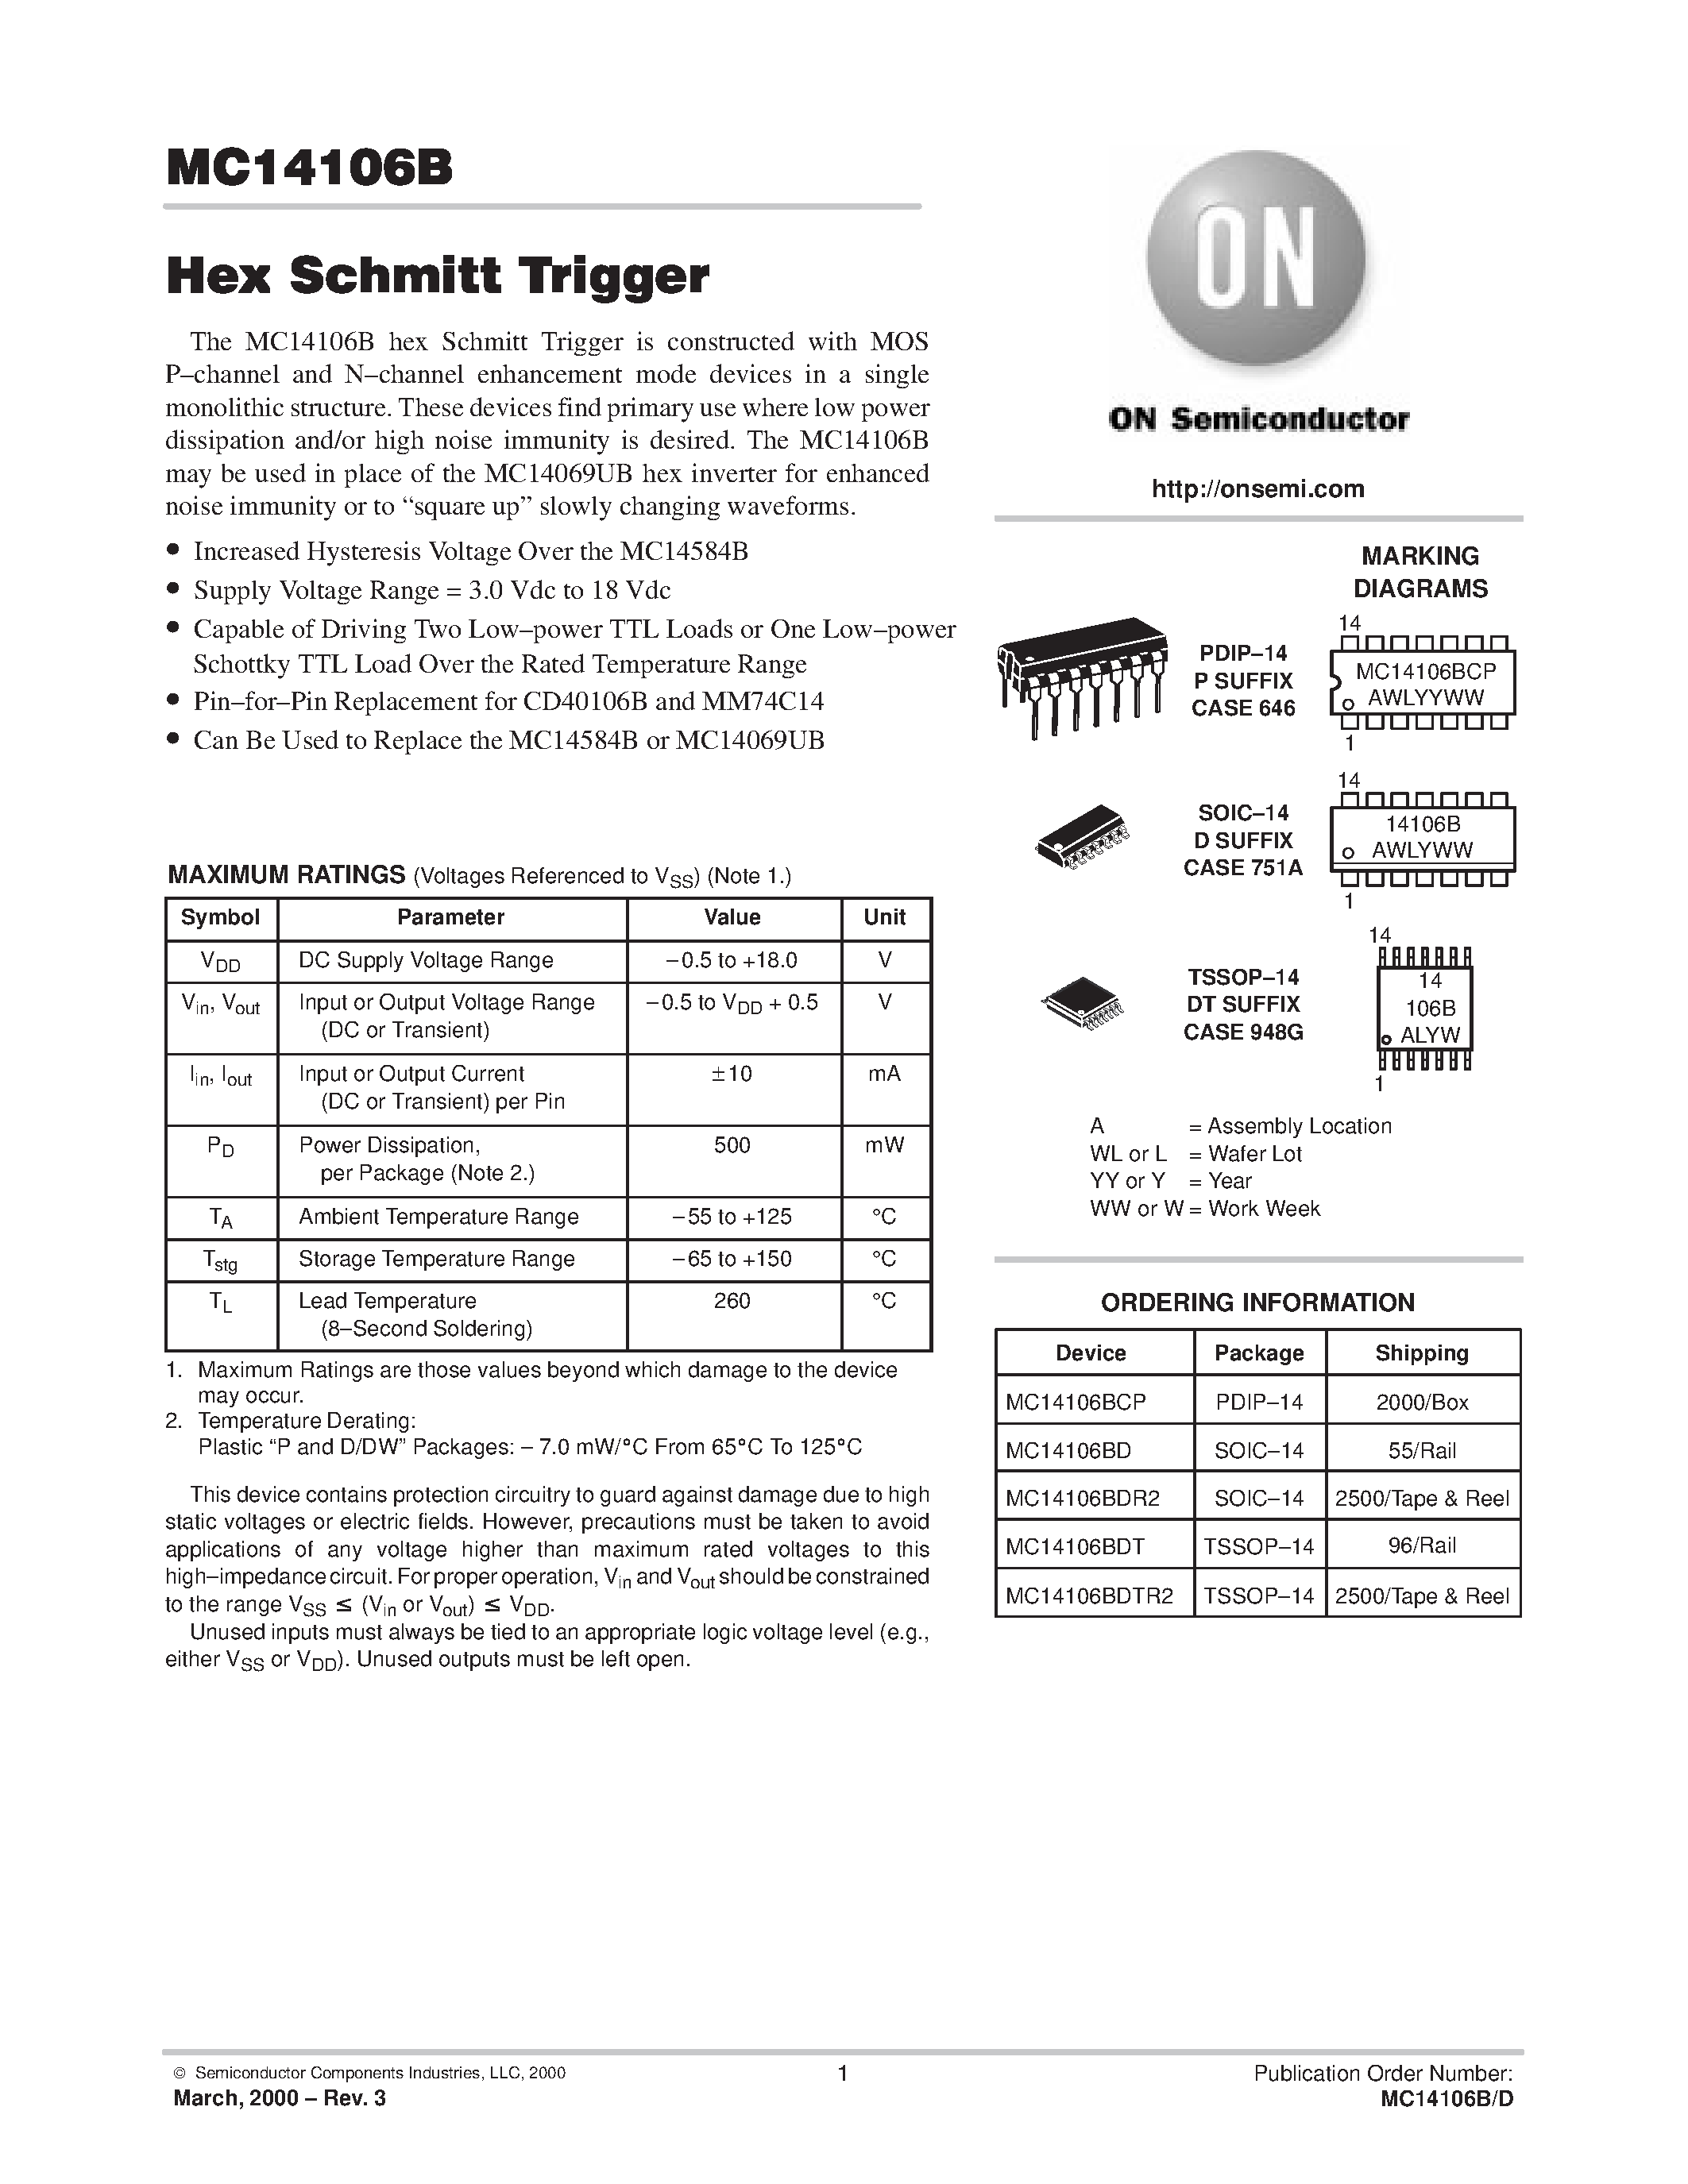 Даташит MC14106BDTR2 - Hex Schmitt Trigger страница 1